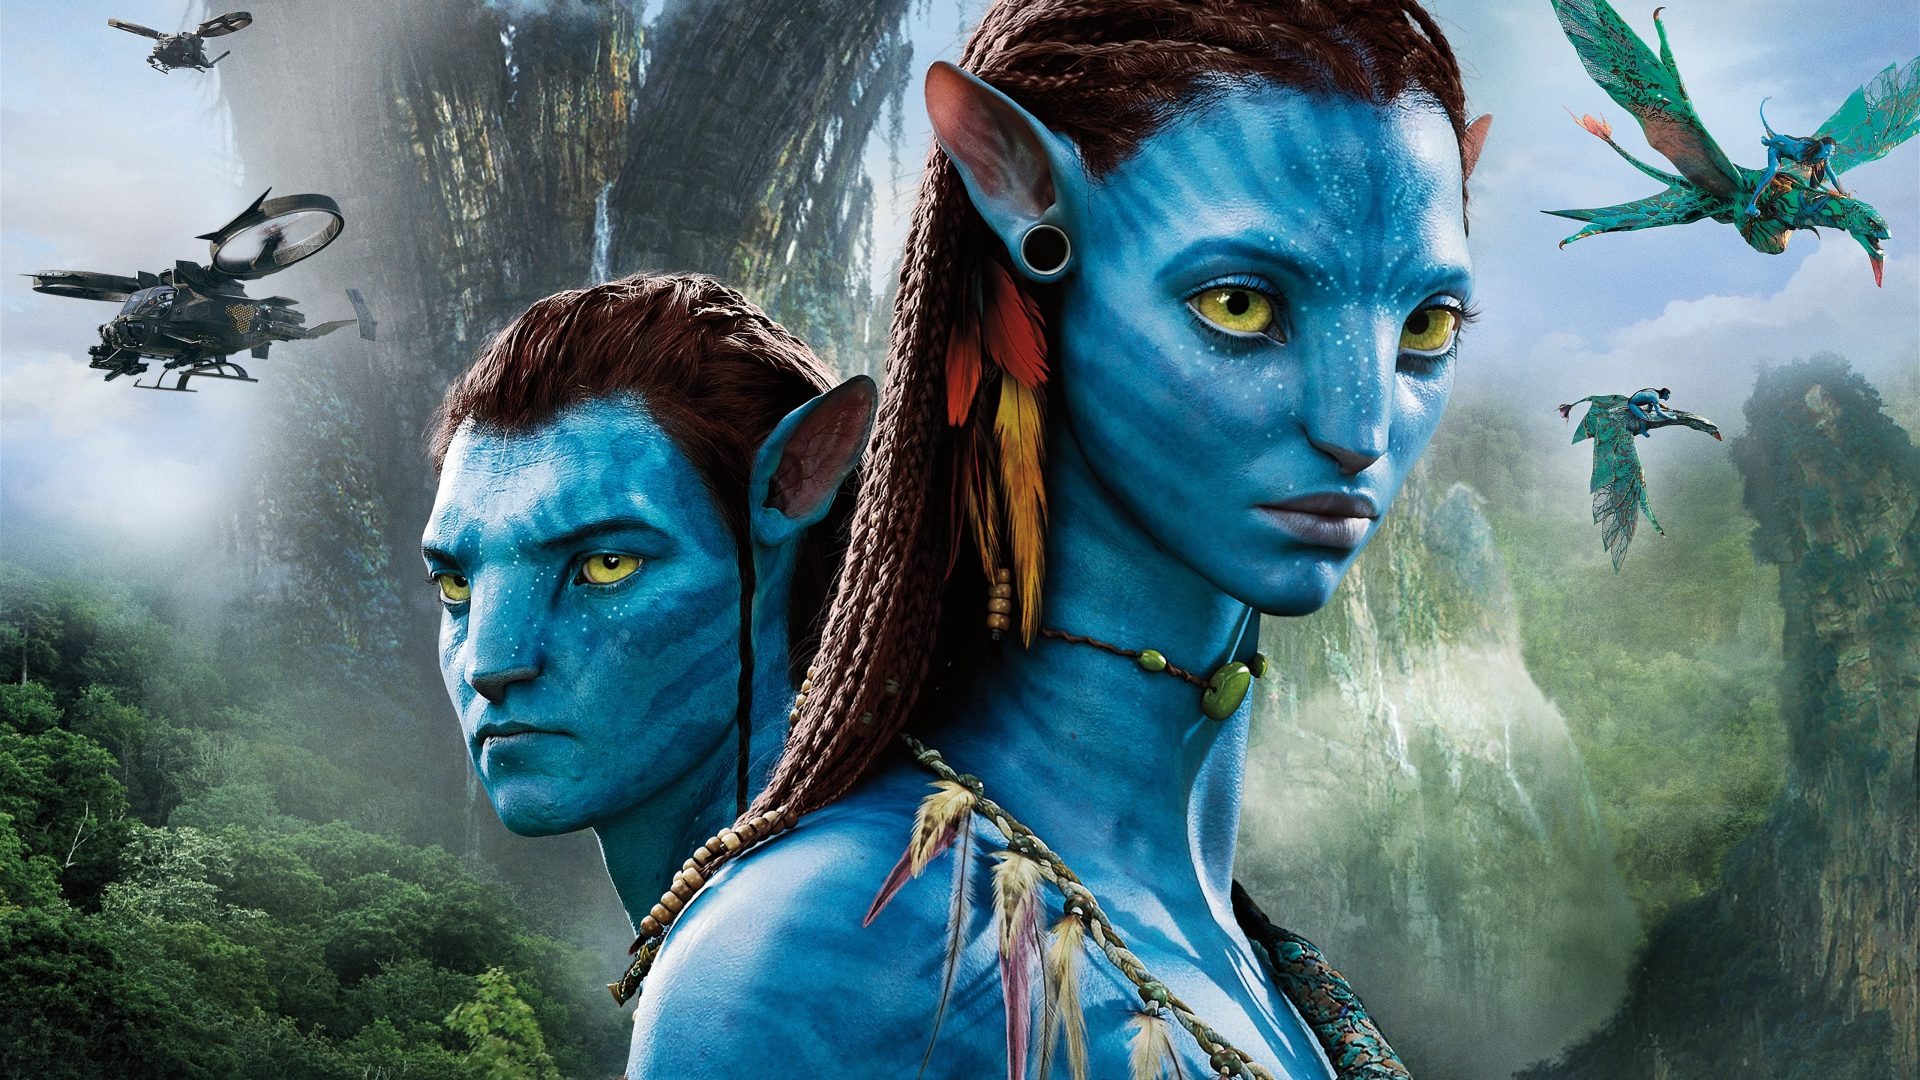 Avatar 2-Star dachte, der Film sei bereits ein Flop Titel